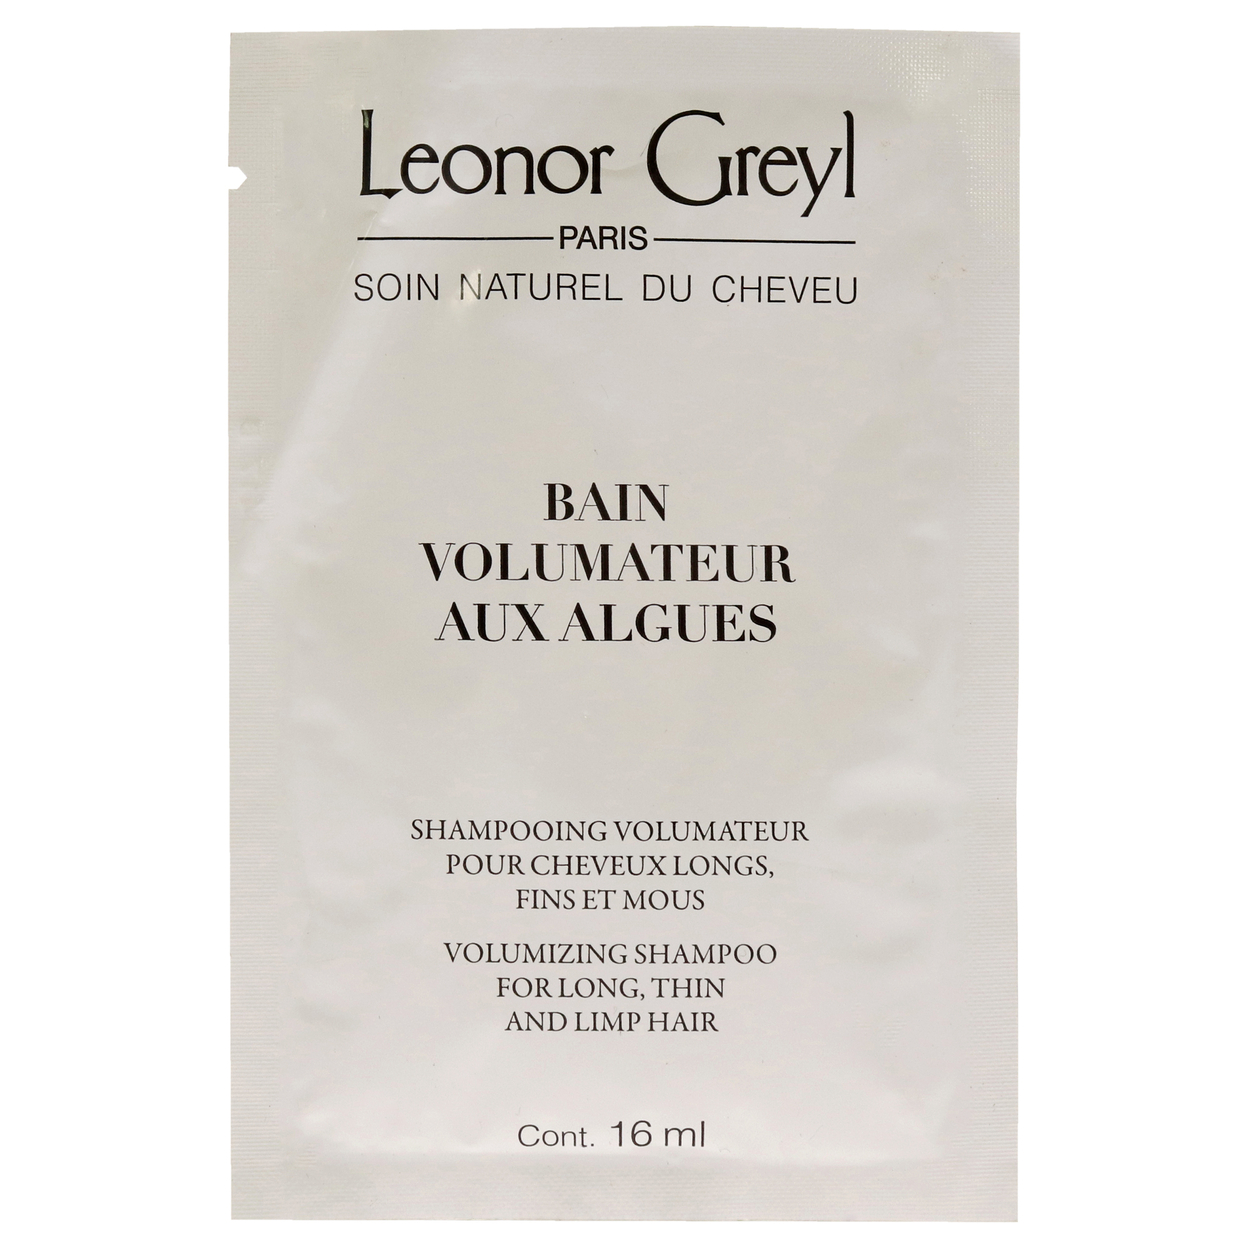 Leonor Greyl Bain Volumateur Aux Algues Shampoo 0.54 Oz